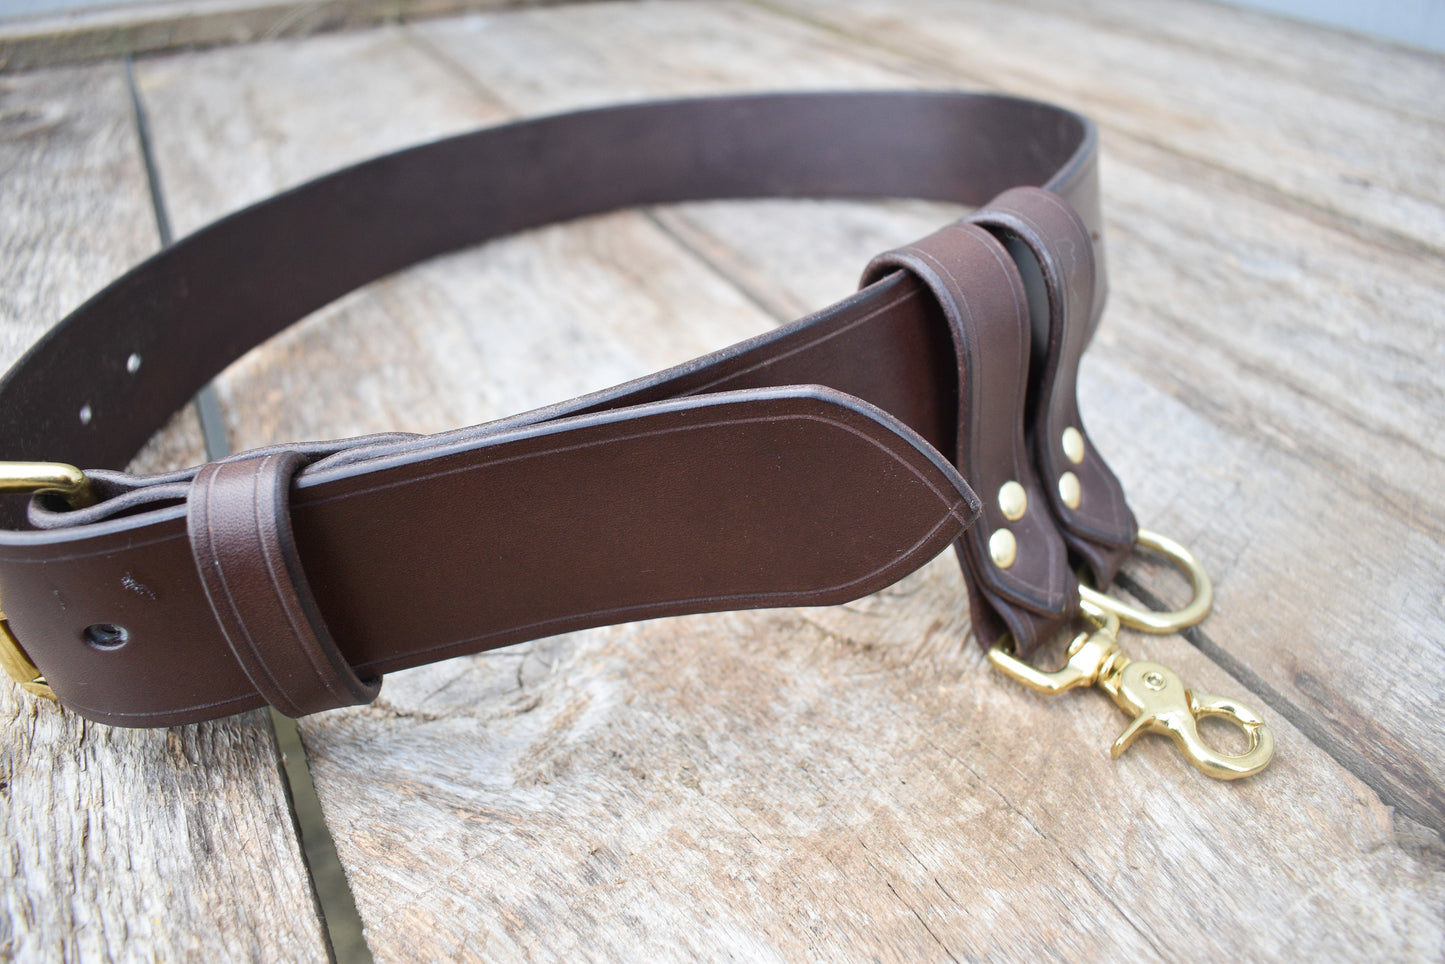 Leather Utility Belt, Bushcraft Gear Belt, Archery Belt, 2 inch wide Leather Belt, with 2 Belt Danglers